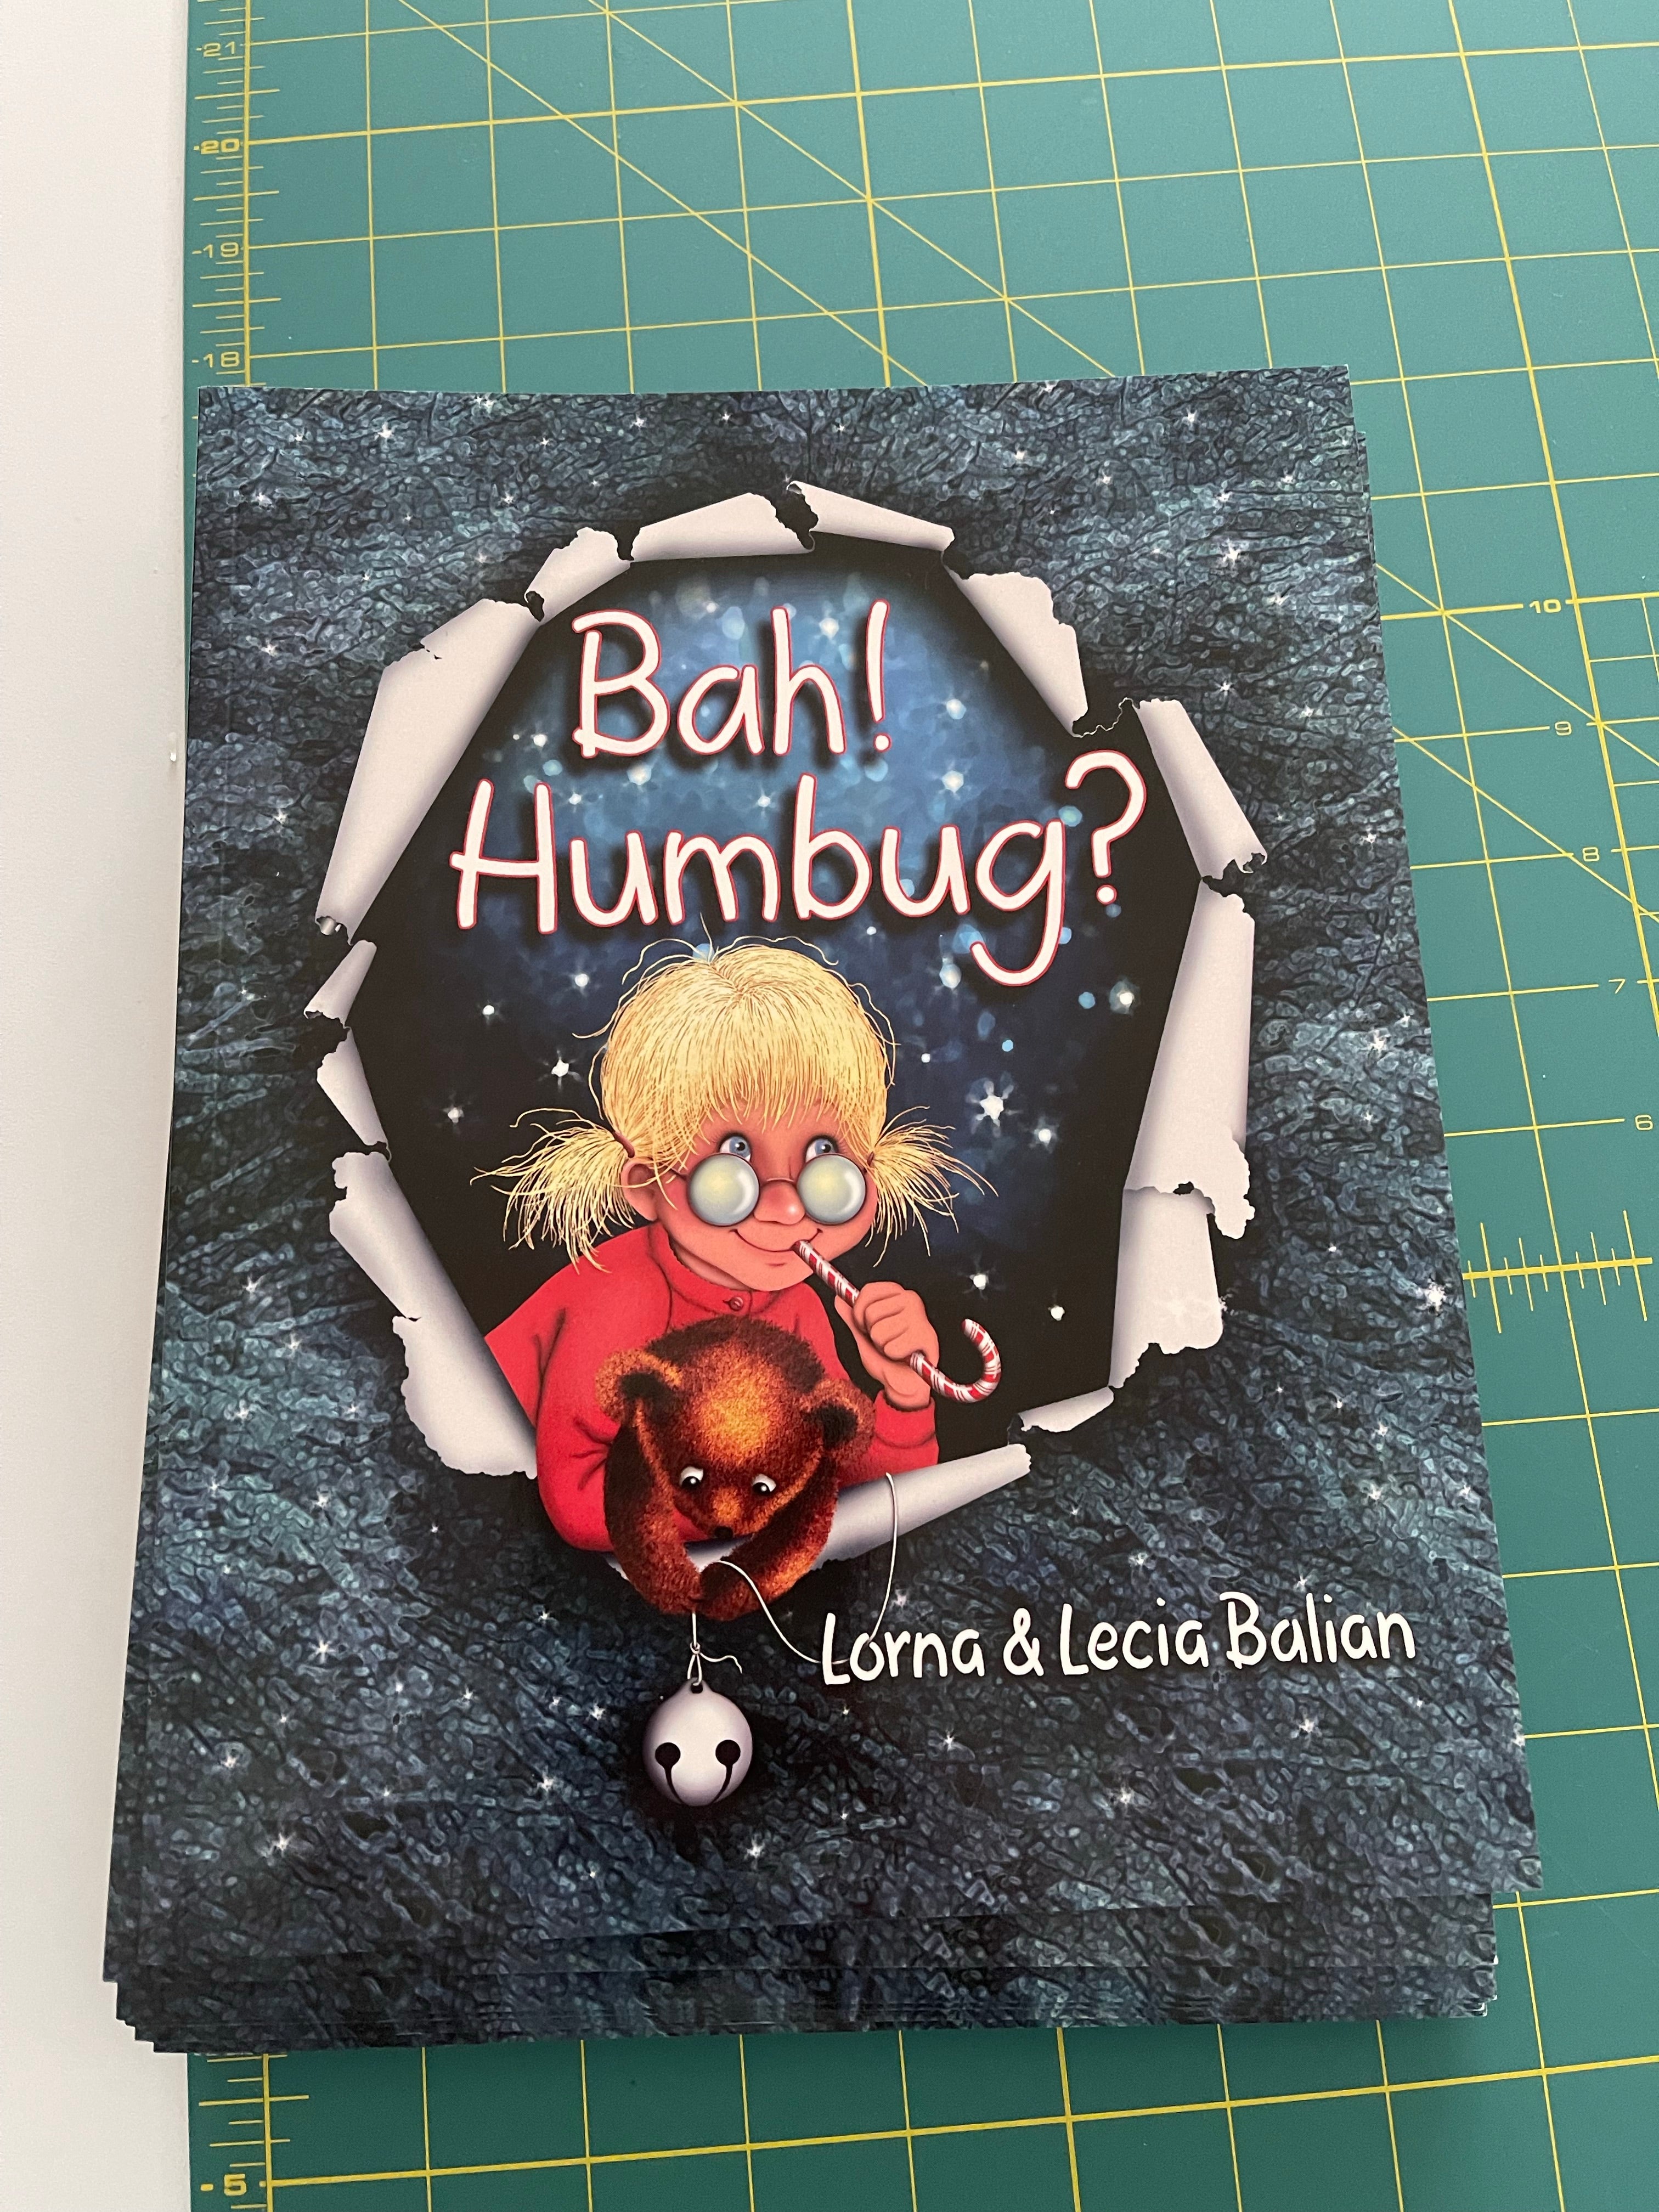 Bah! Humbug? by Lorna & Lecia Balian